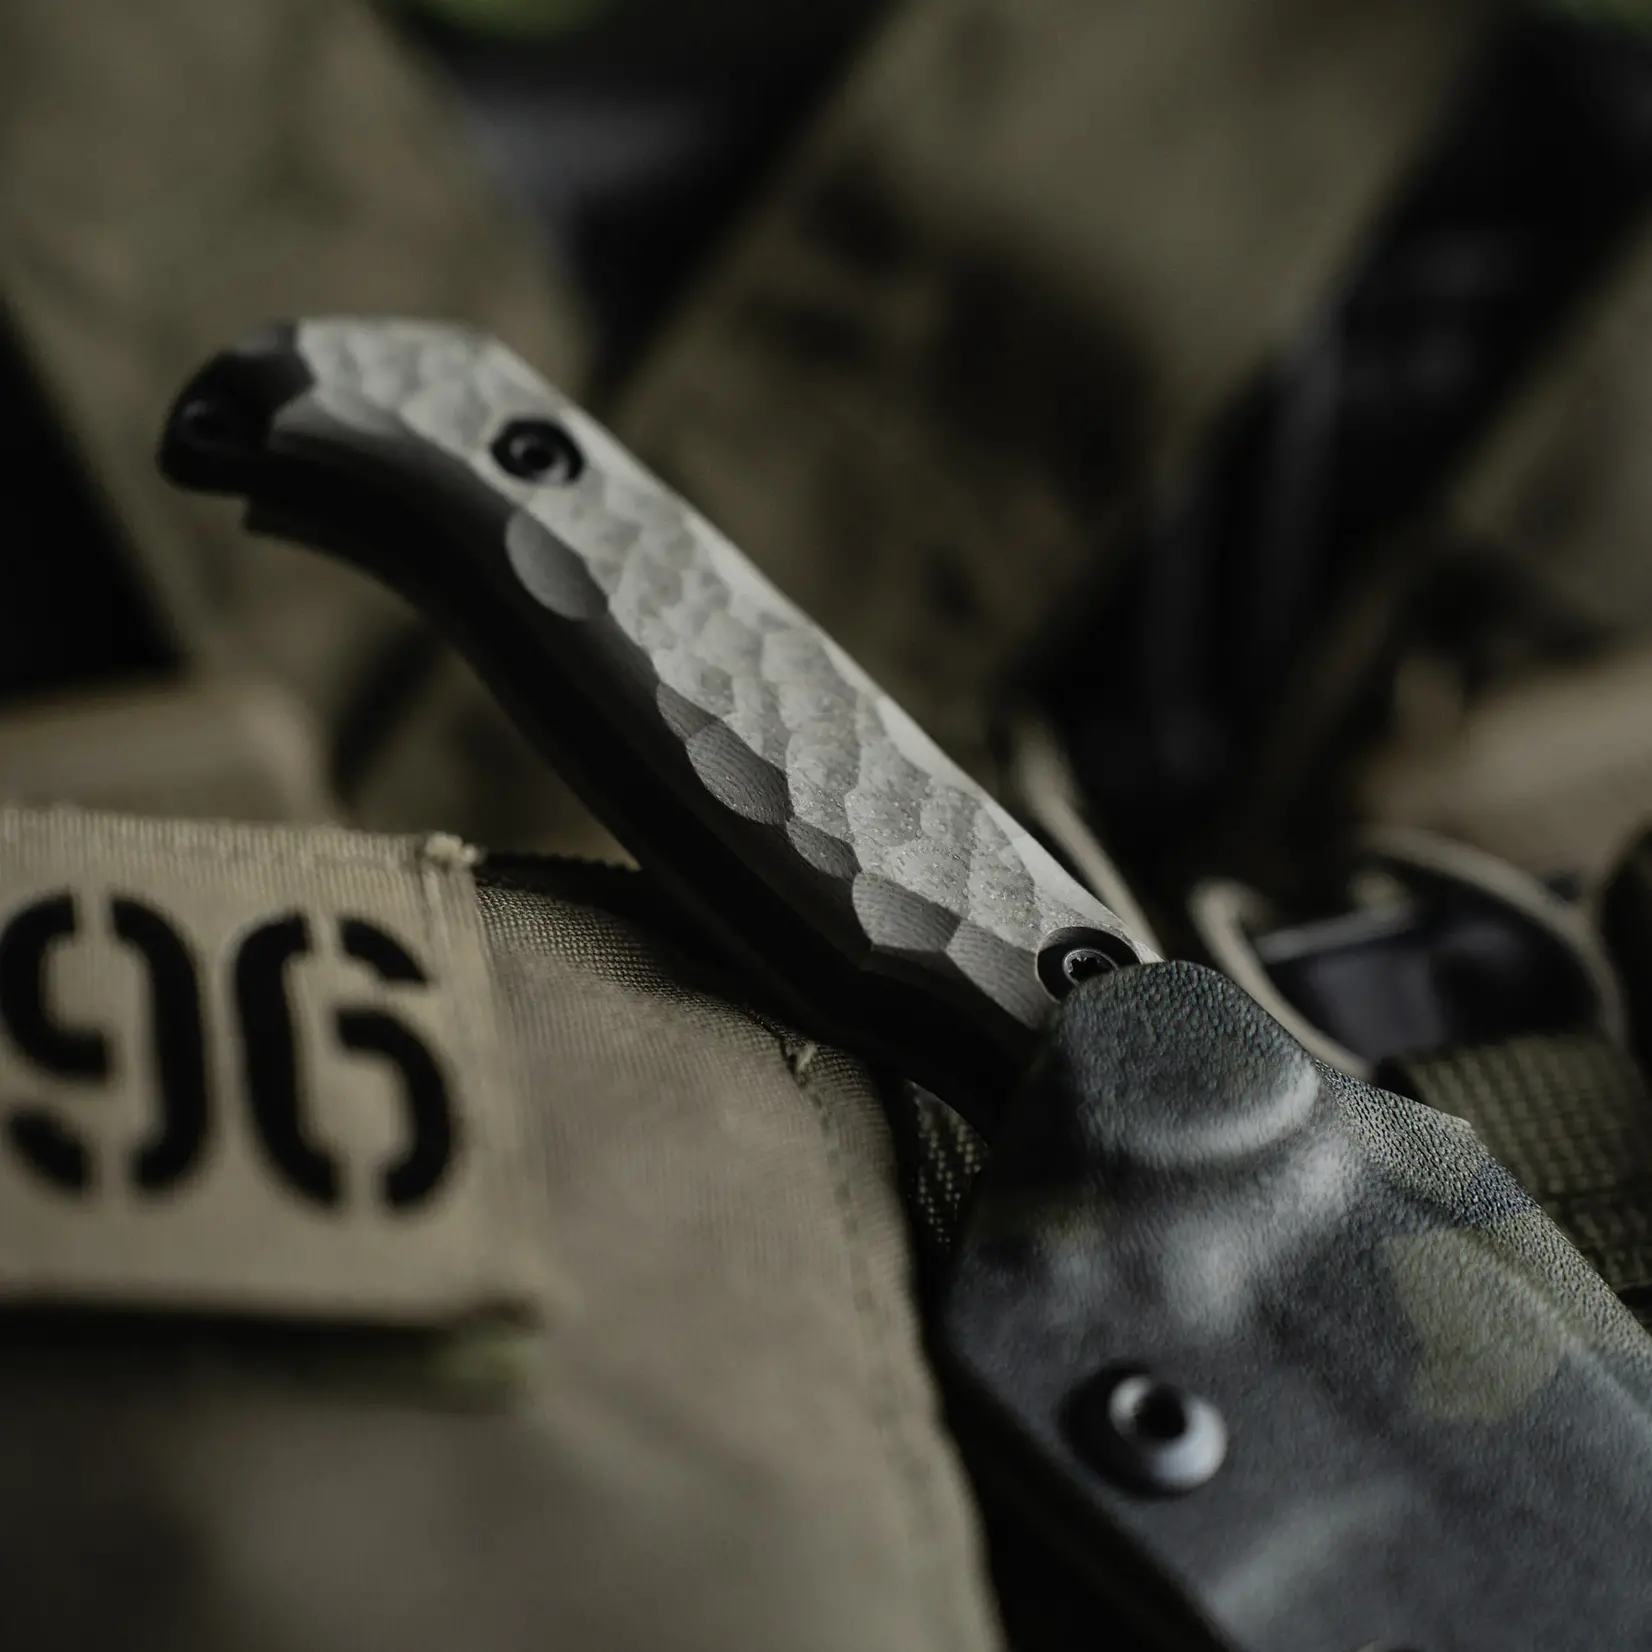 Toor Knives Toor Knives S35VN & G10 Vapor Gray Darter